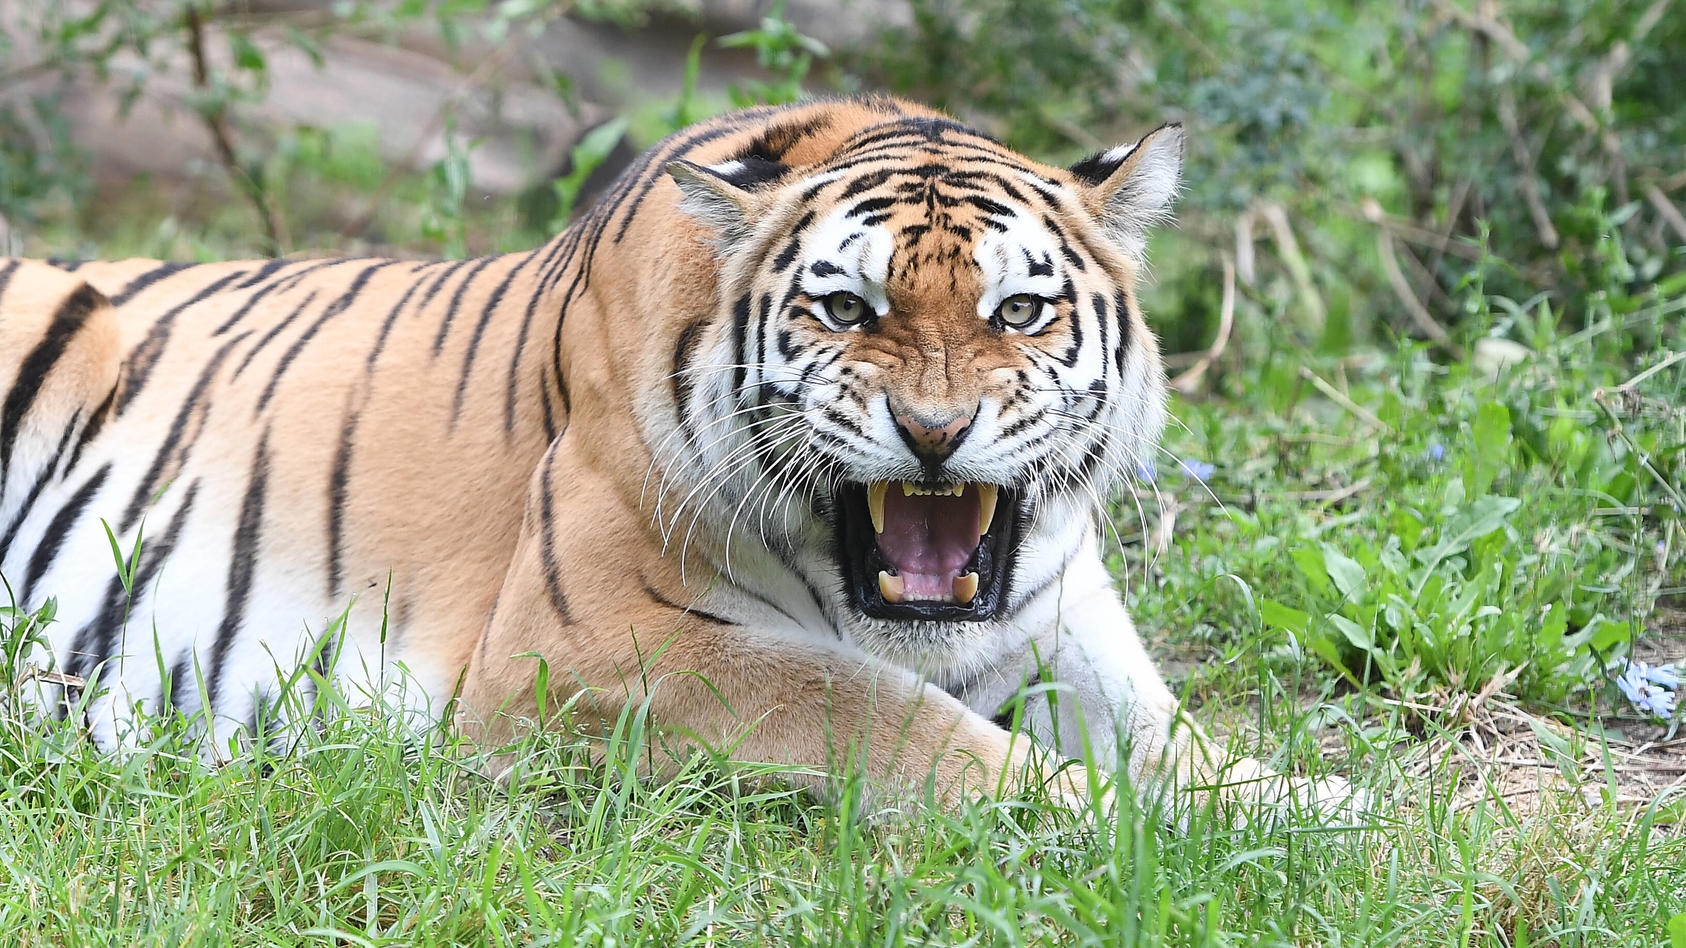 Tiger-Jungtiere erobern die Außenanlage am 22.07.2021 im Zoo Duisburg in Duisburg In den vergangenen Wochen machten die Mini-Tiger unter den wachsamen Augen von Mutter Dasha ihre ersten Gehversuche im rückwertigen Bereich der Tiger-Anlage. Nun erober